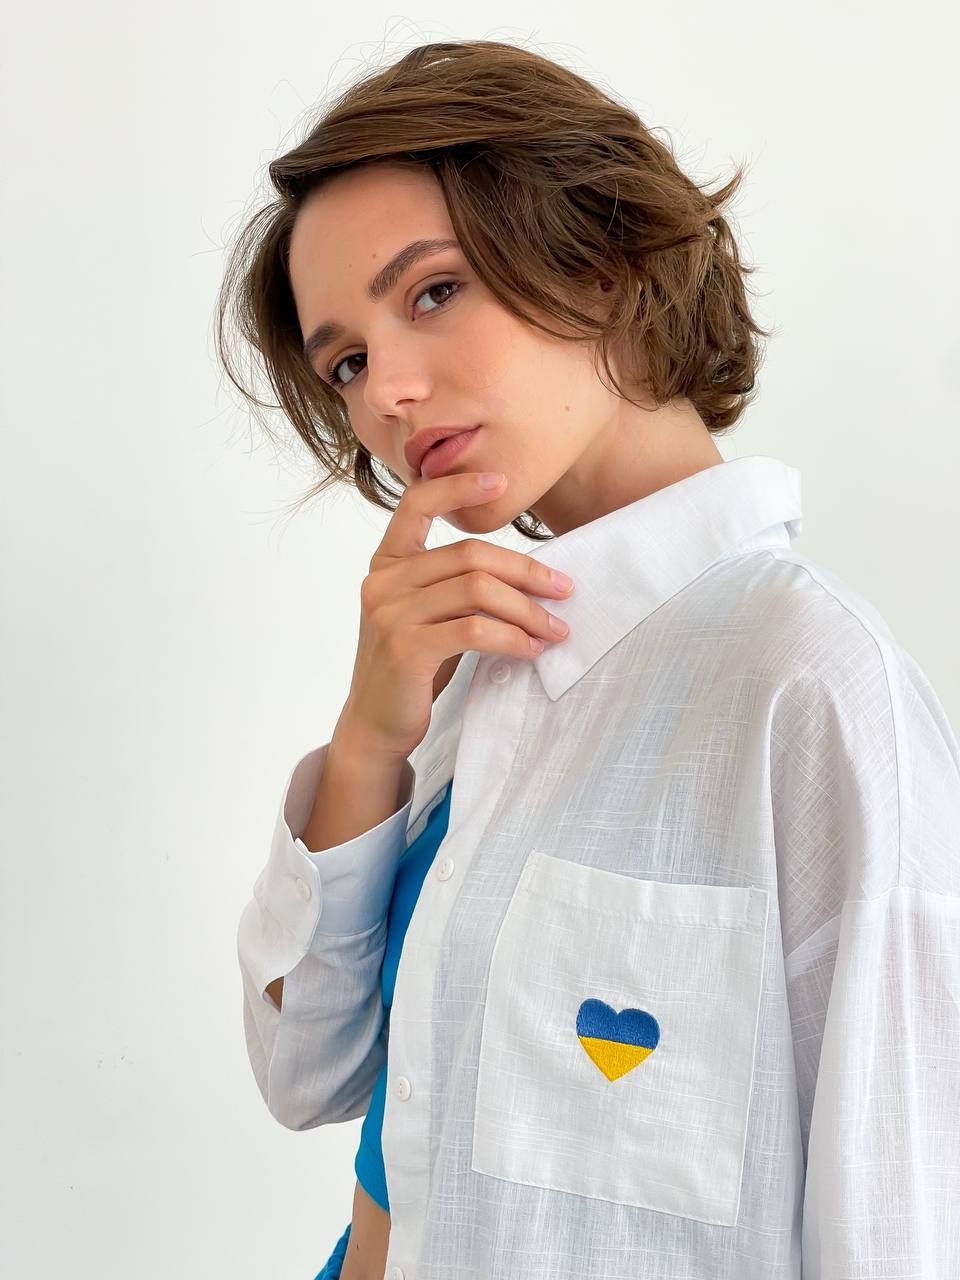 Льняная рубашка белая с вышивкой сине-желтое сердце, Белый, универсальный (S-L)